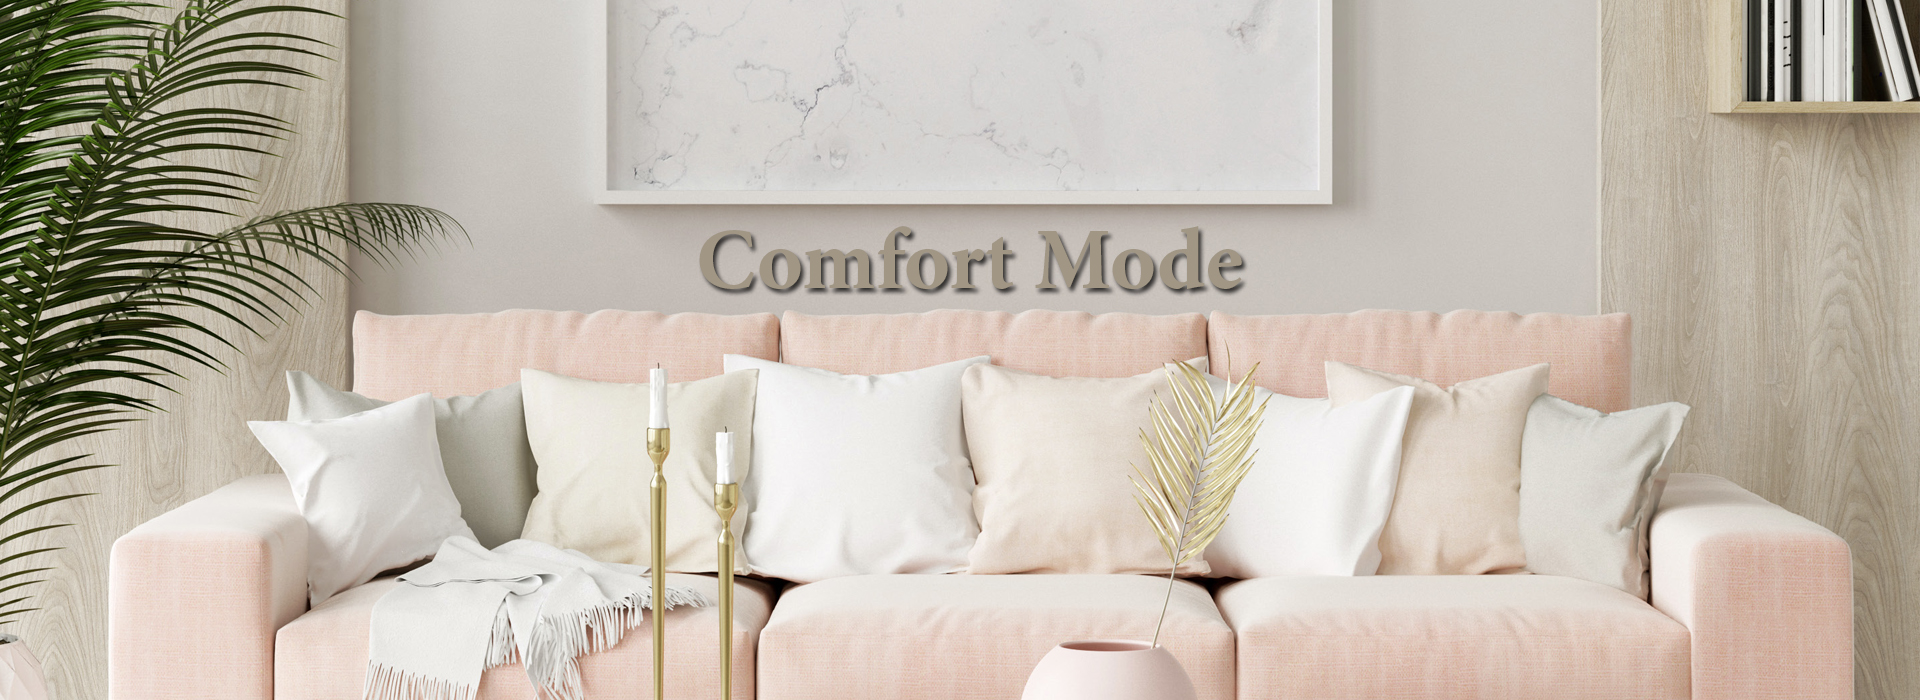 Comfort Mode